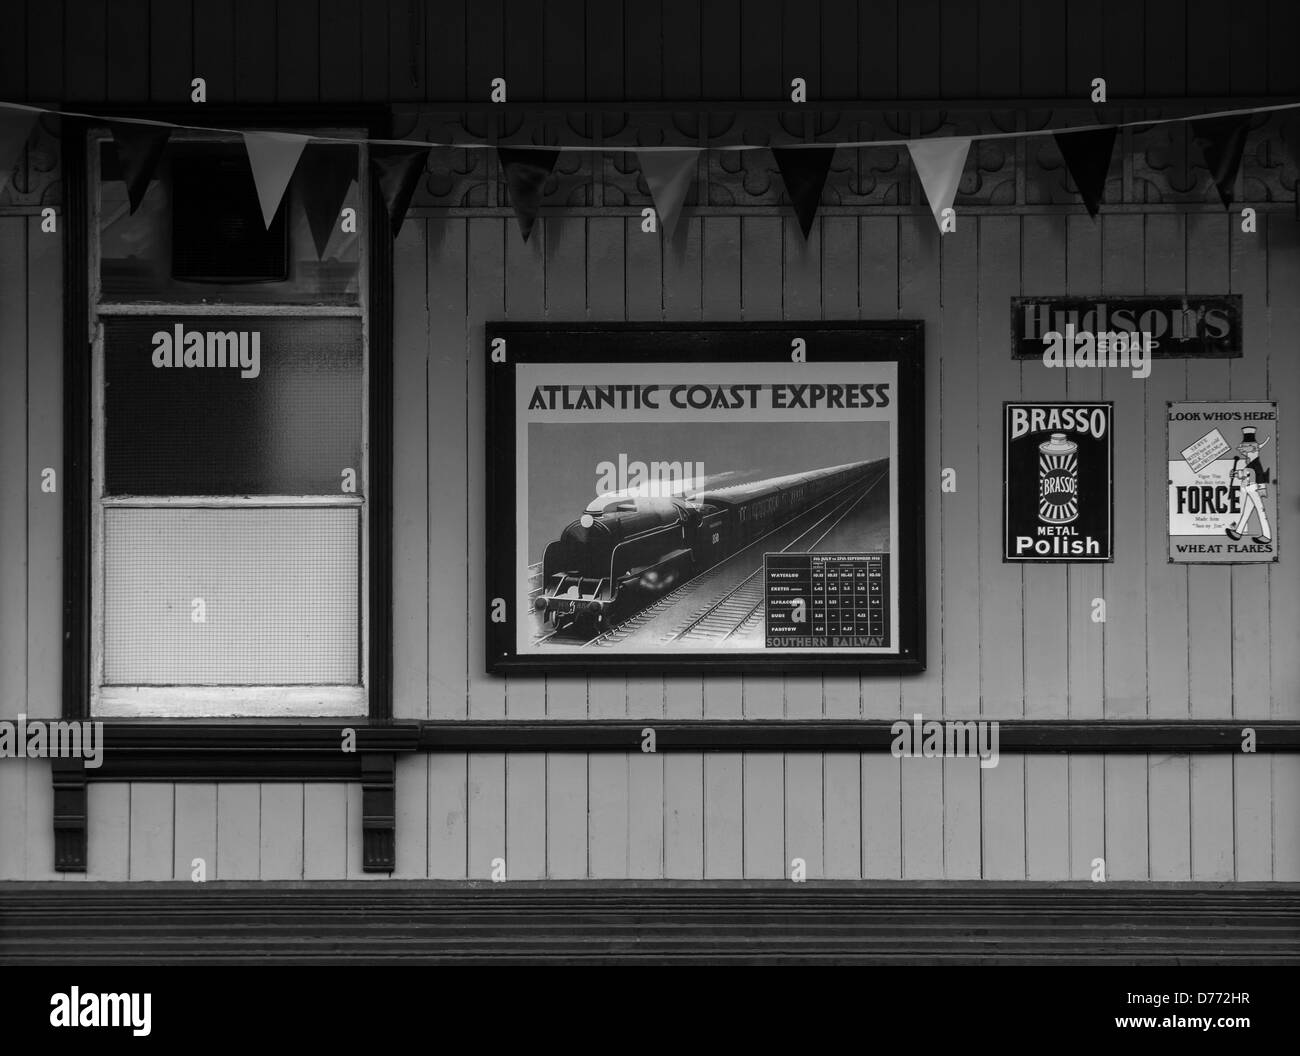 Eine monochrome Szene ein Bahnhofsgebäude der Bluebell Railway anzeigen einschließlich der Atlantic Coast Express zeigt. Stockfoto